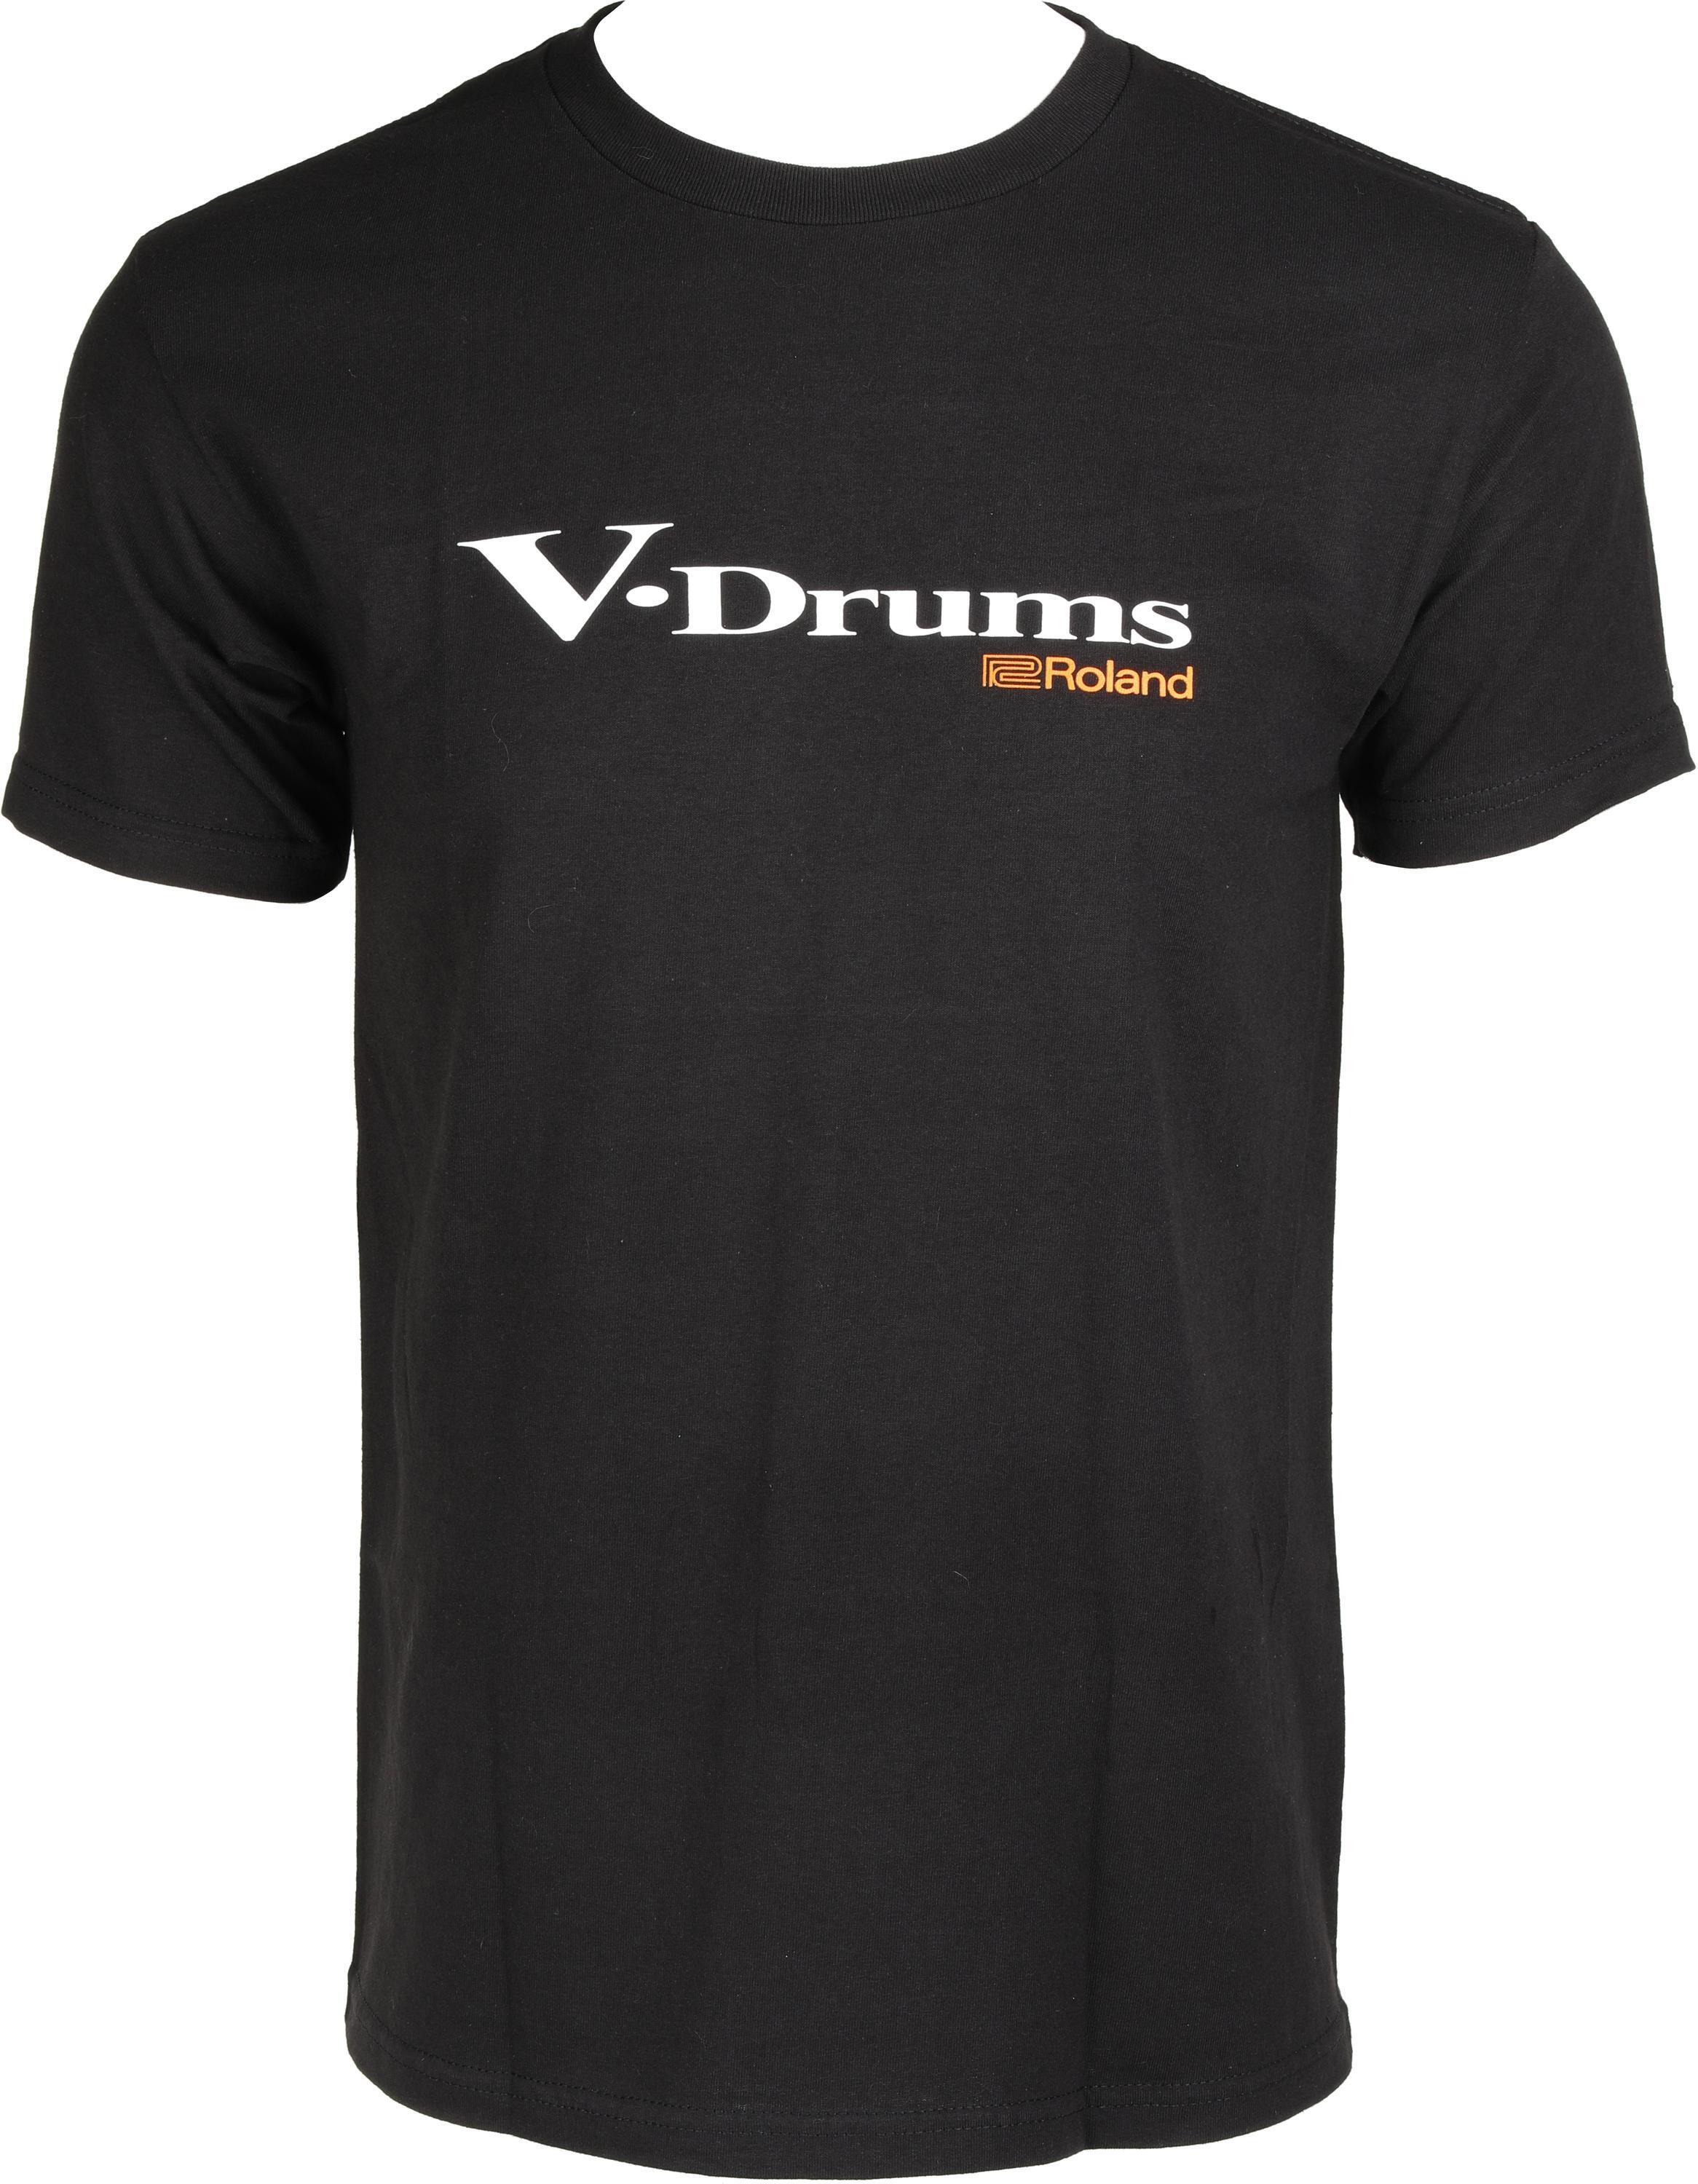 Roland V-Drums Logo T-shirt - Black, X-Large